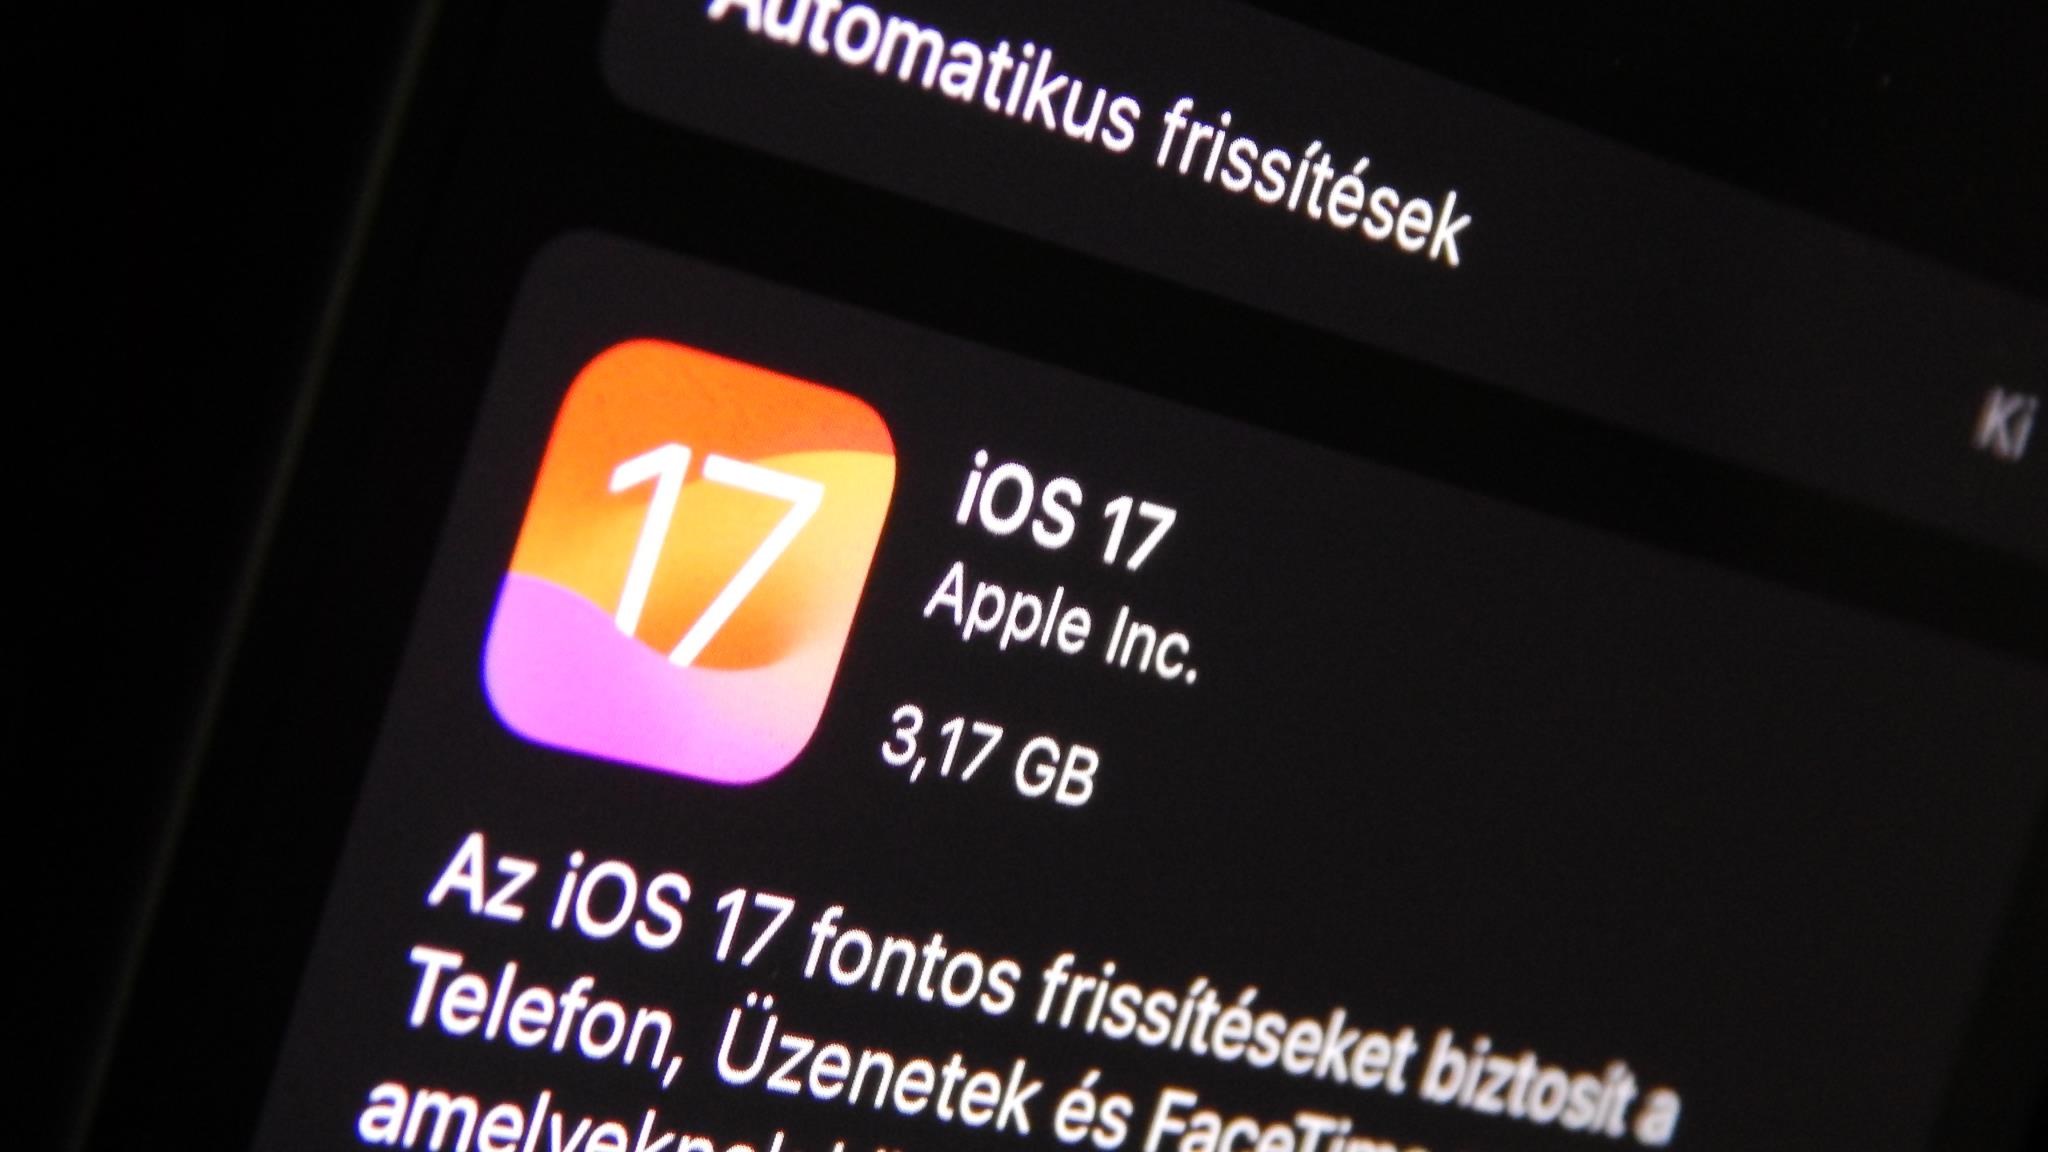 Tecnología: ¿Ya actualizaste tu iPhone a iOS 17?  Mírala ahora, puede que no seas feliz.